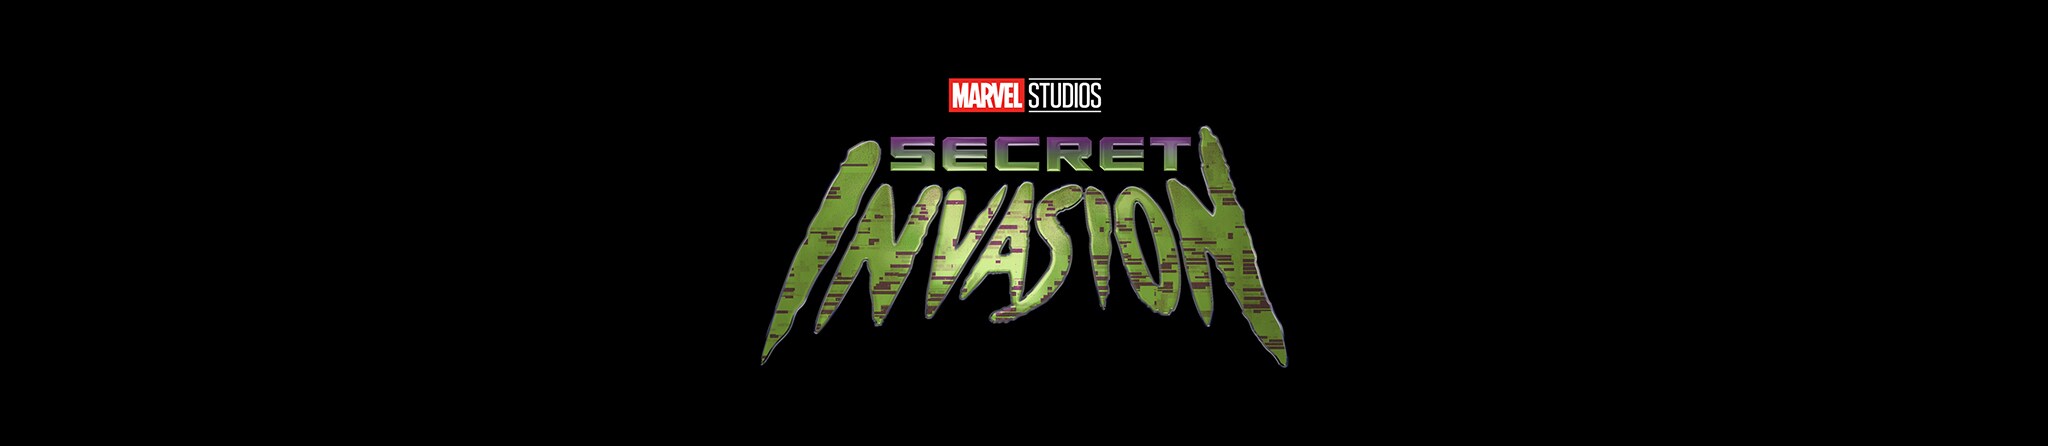 Marvel Studios | Secret Invasion